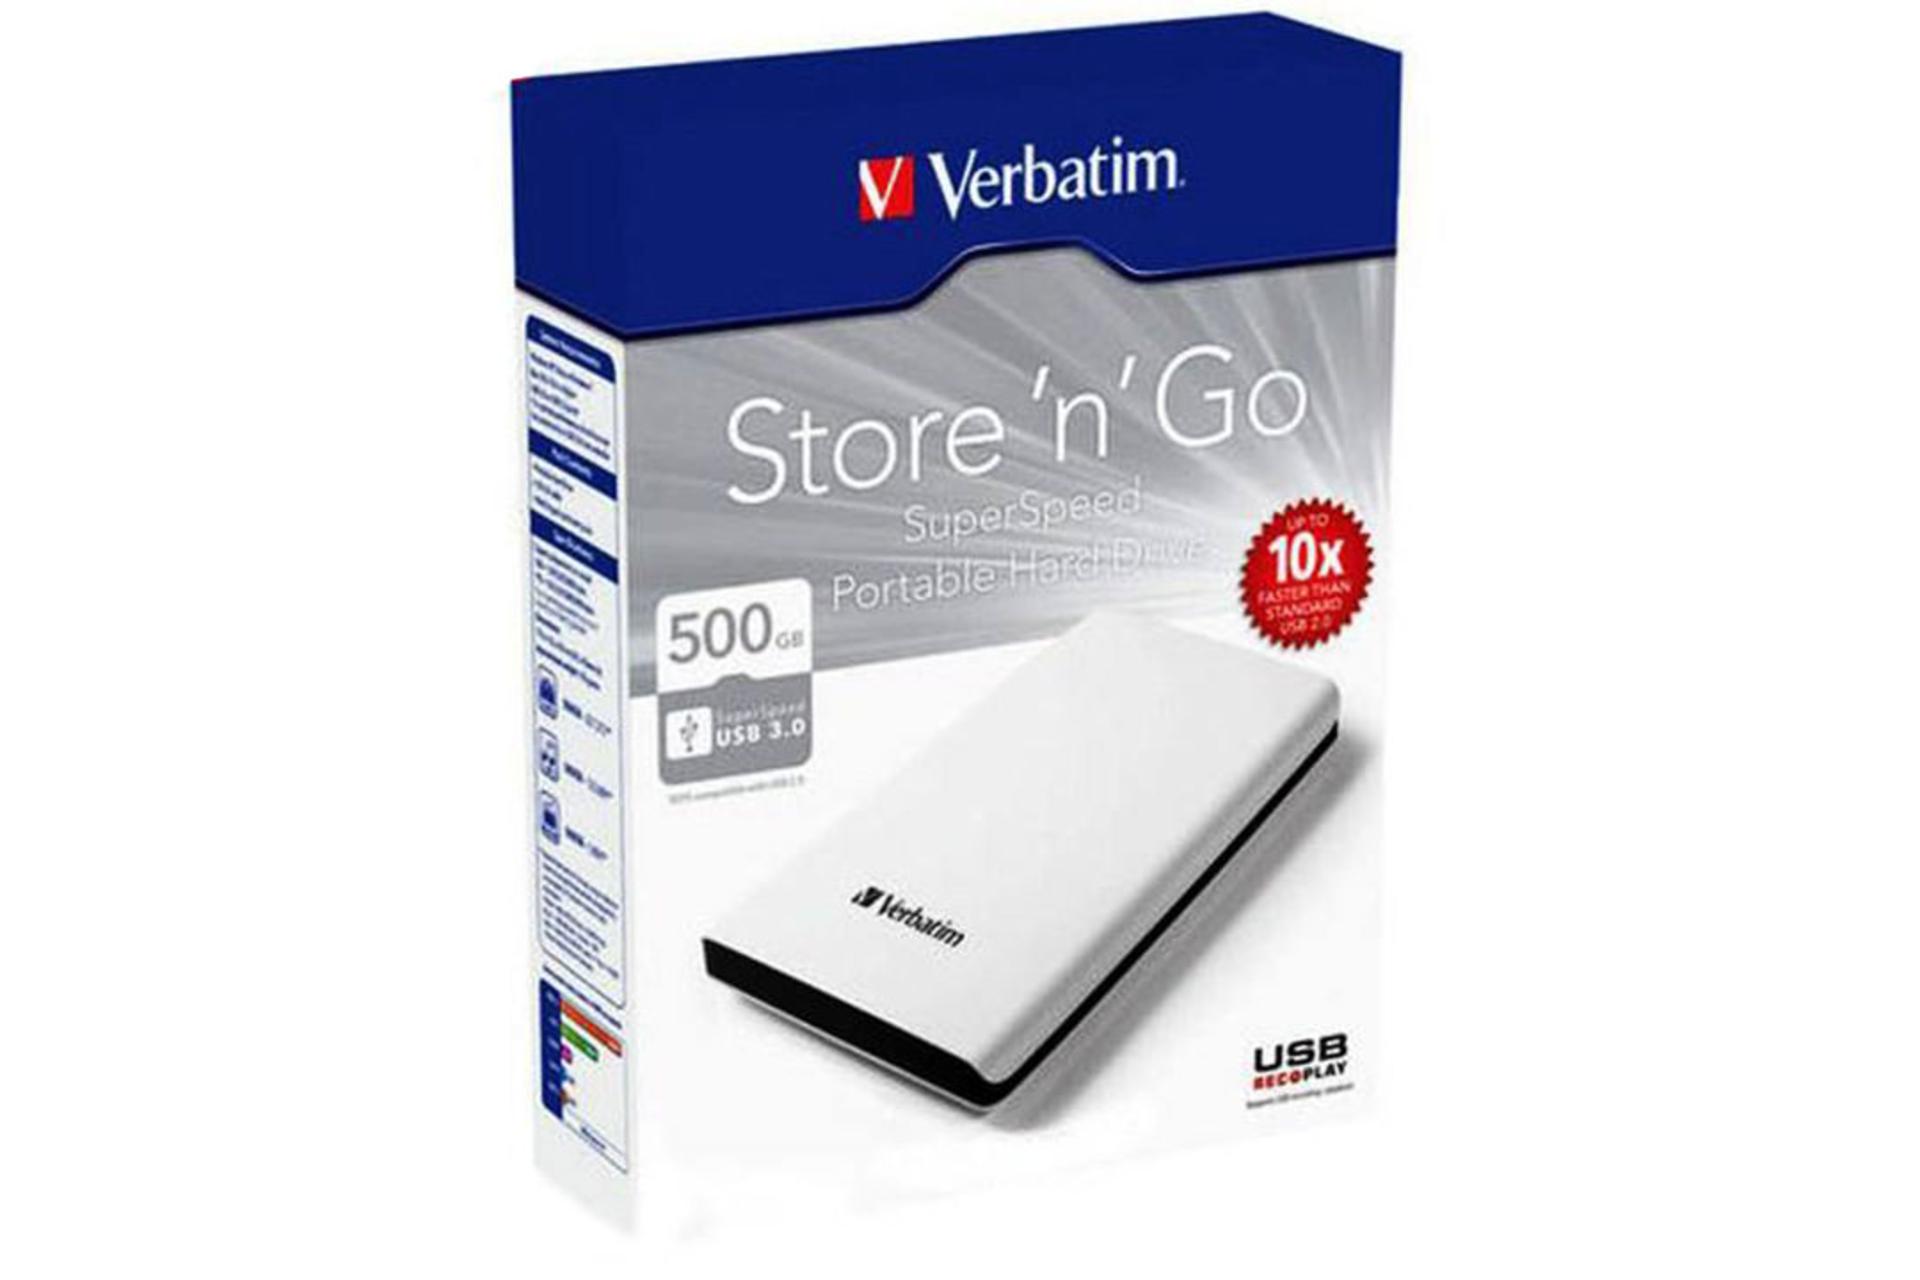 Verbatim Store N Go Super Speed 05306